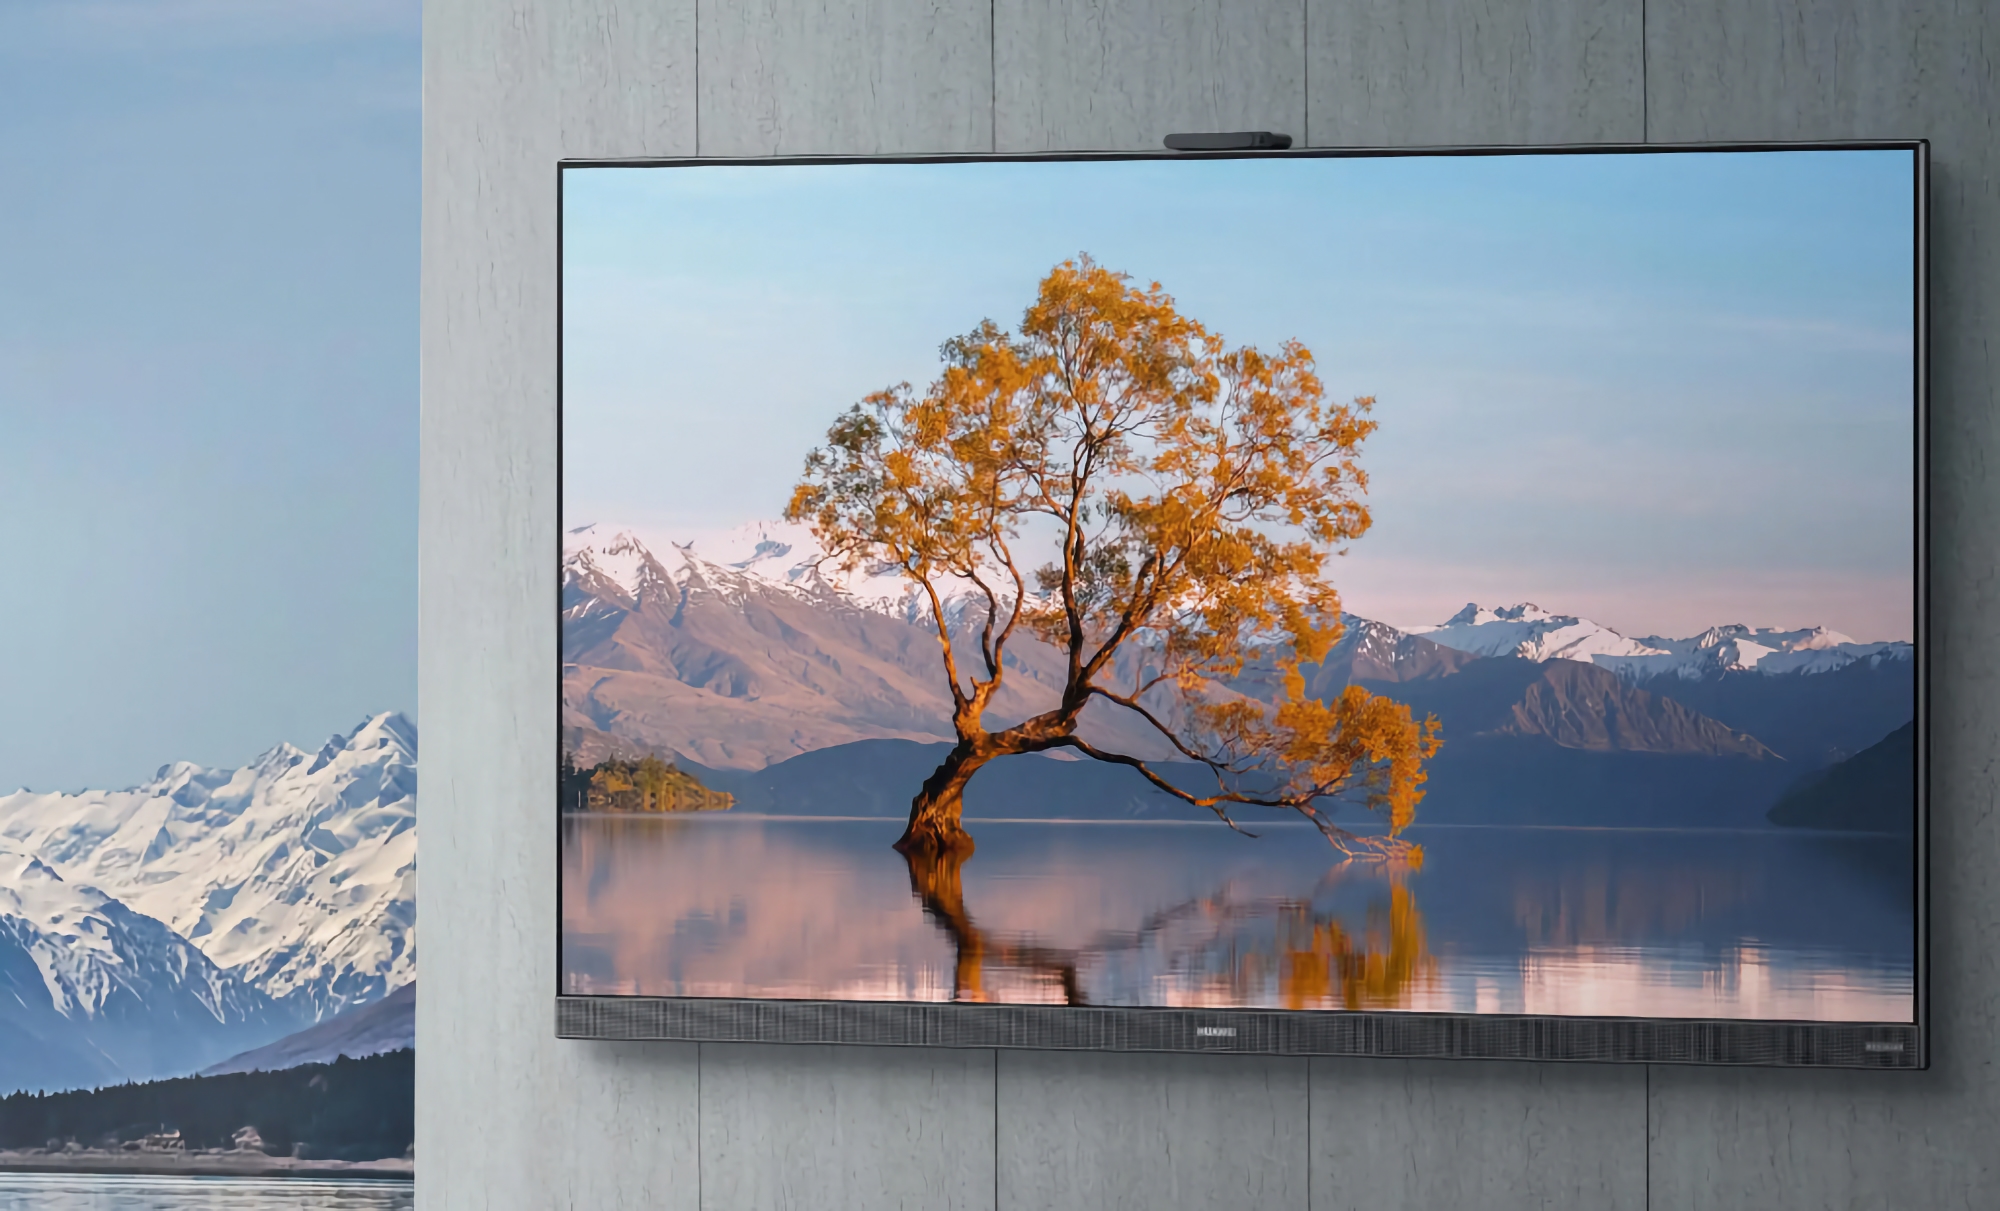 Huawei Smart Screen V TV 2022: una linea di smart TV con schermi fino a 75", supporto a 120 Hz, webcam integrata e HarmonyOS